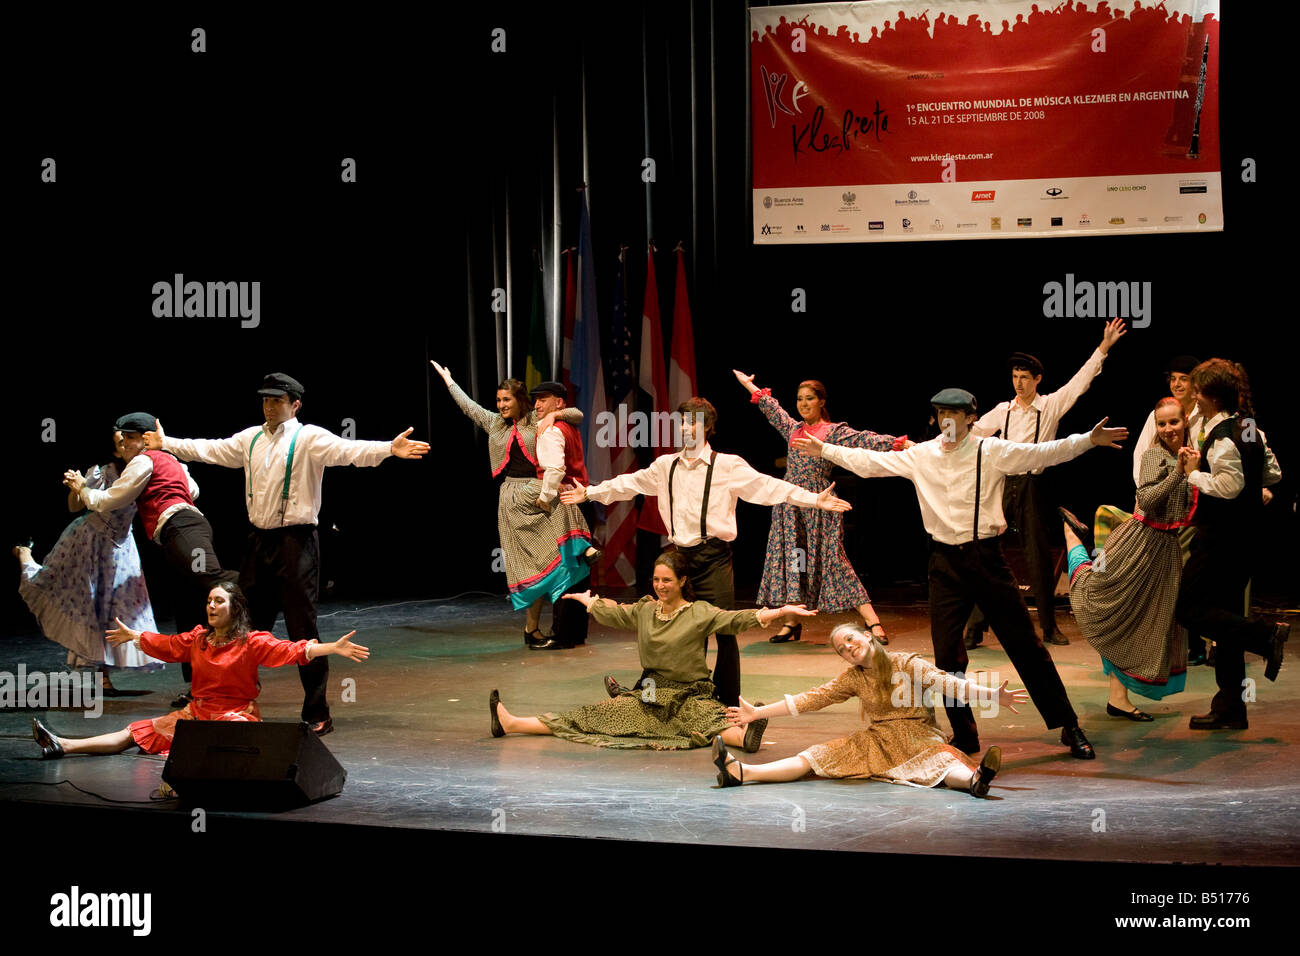 Grupo de danza judía company realizando en el Teatro Alvear durante la Klezfiesta en Buenos Aires, Argentina Foto de stock